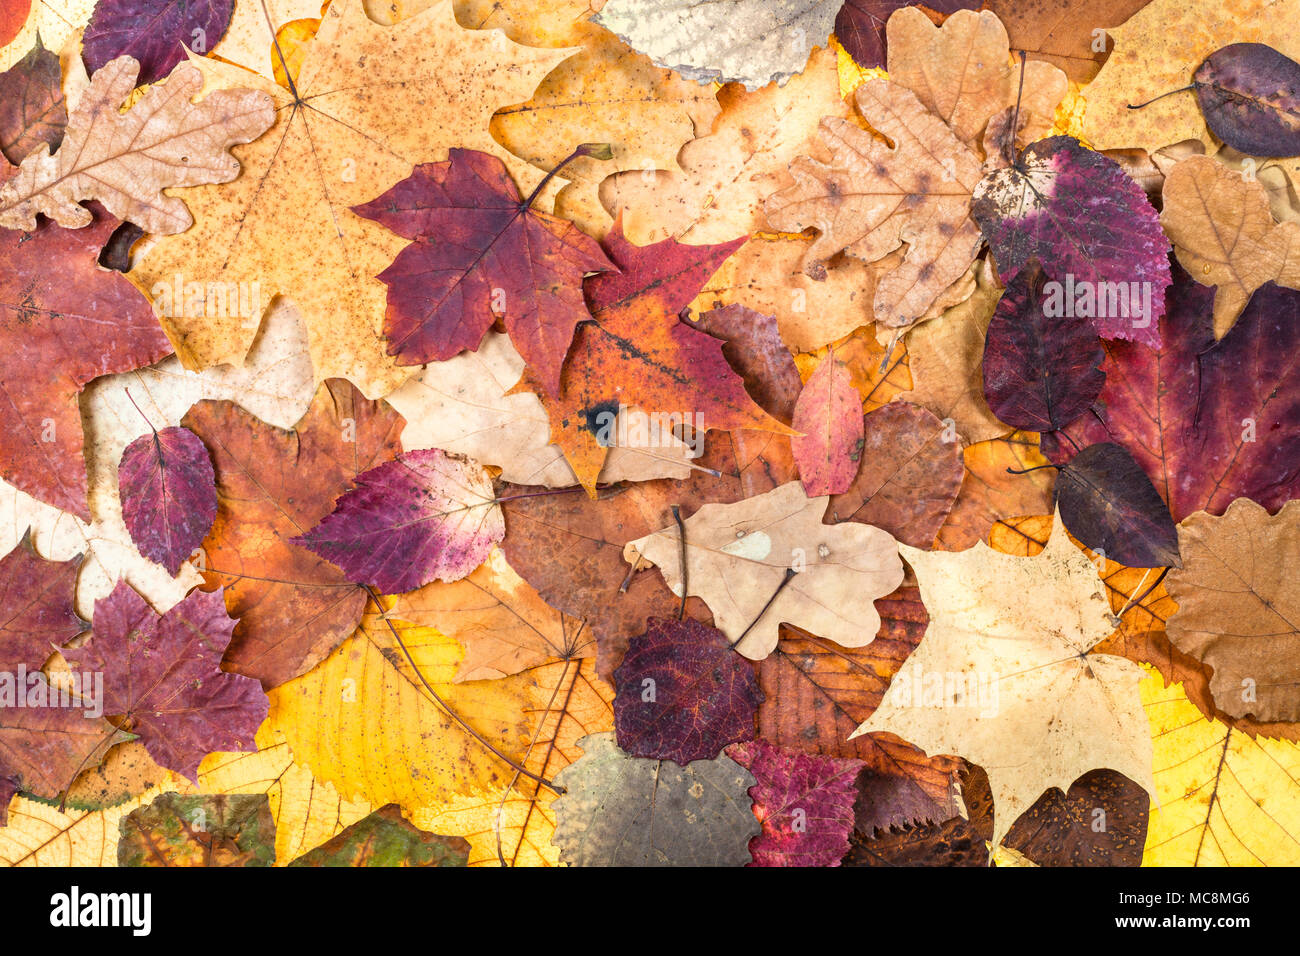 Natürliche Herbst Hintergrund aus verschiedenen bunten Blätter von Eichen, Ahorn, Erle, Malus, Aspen Bäume Stockfoto